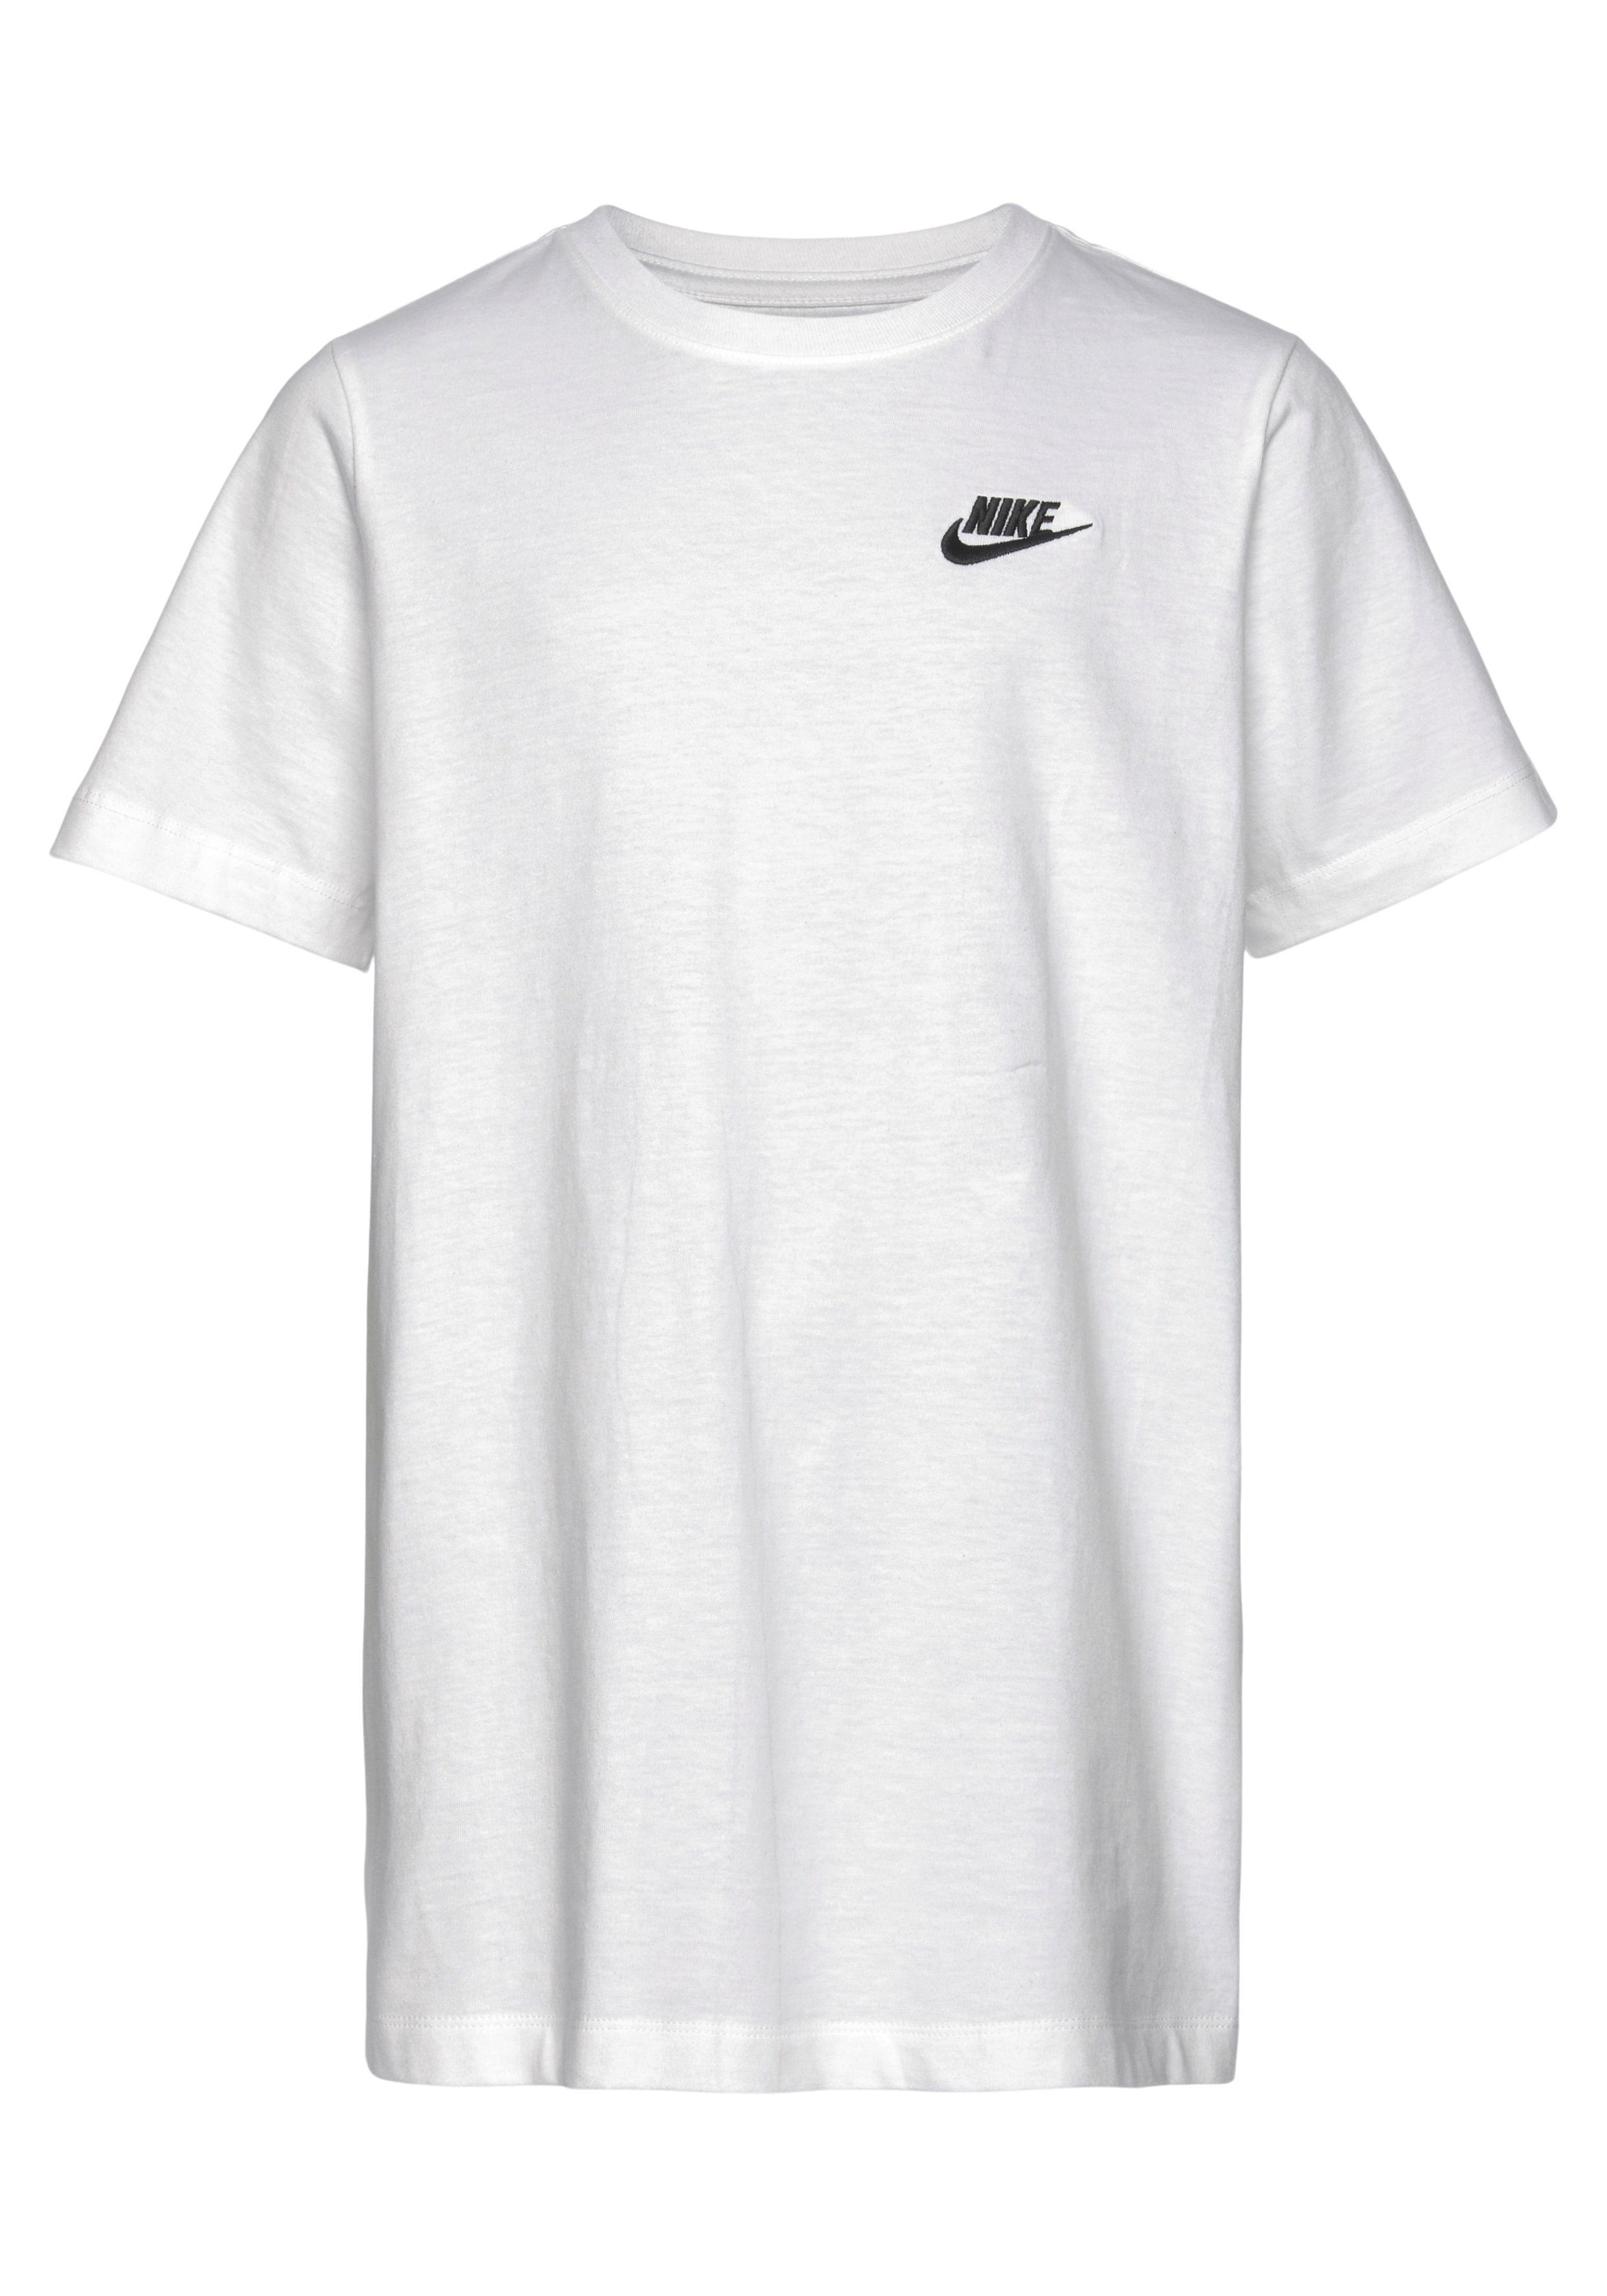 BIG T-SHIRT T-Shirt KIDS' weiß Sportswear Nike